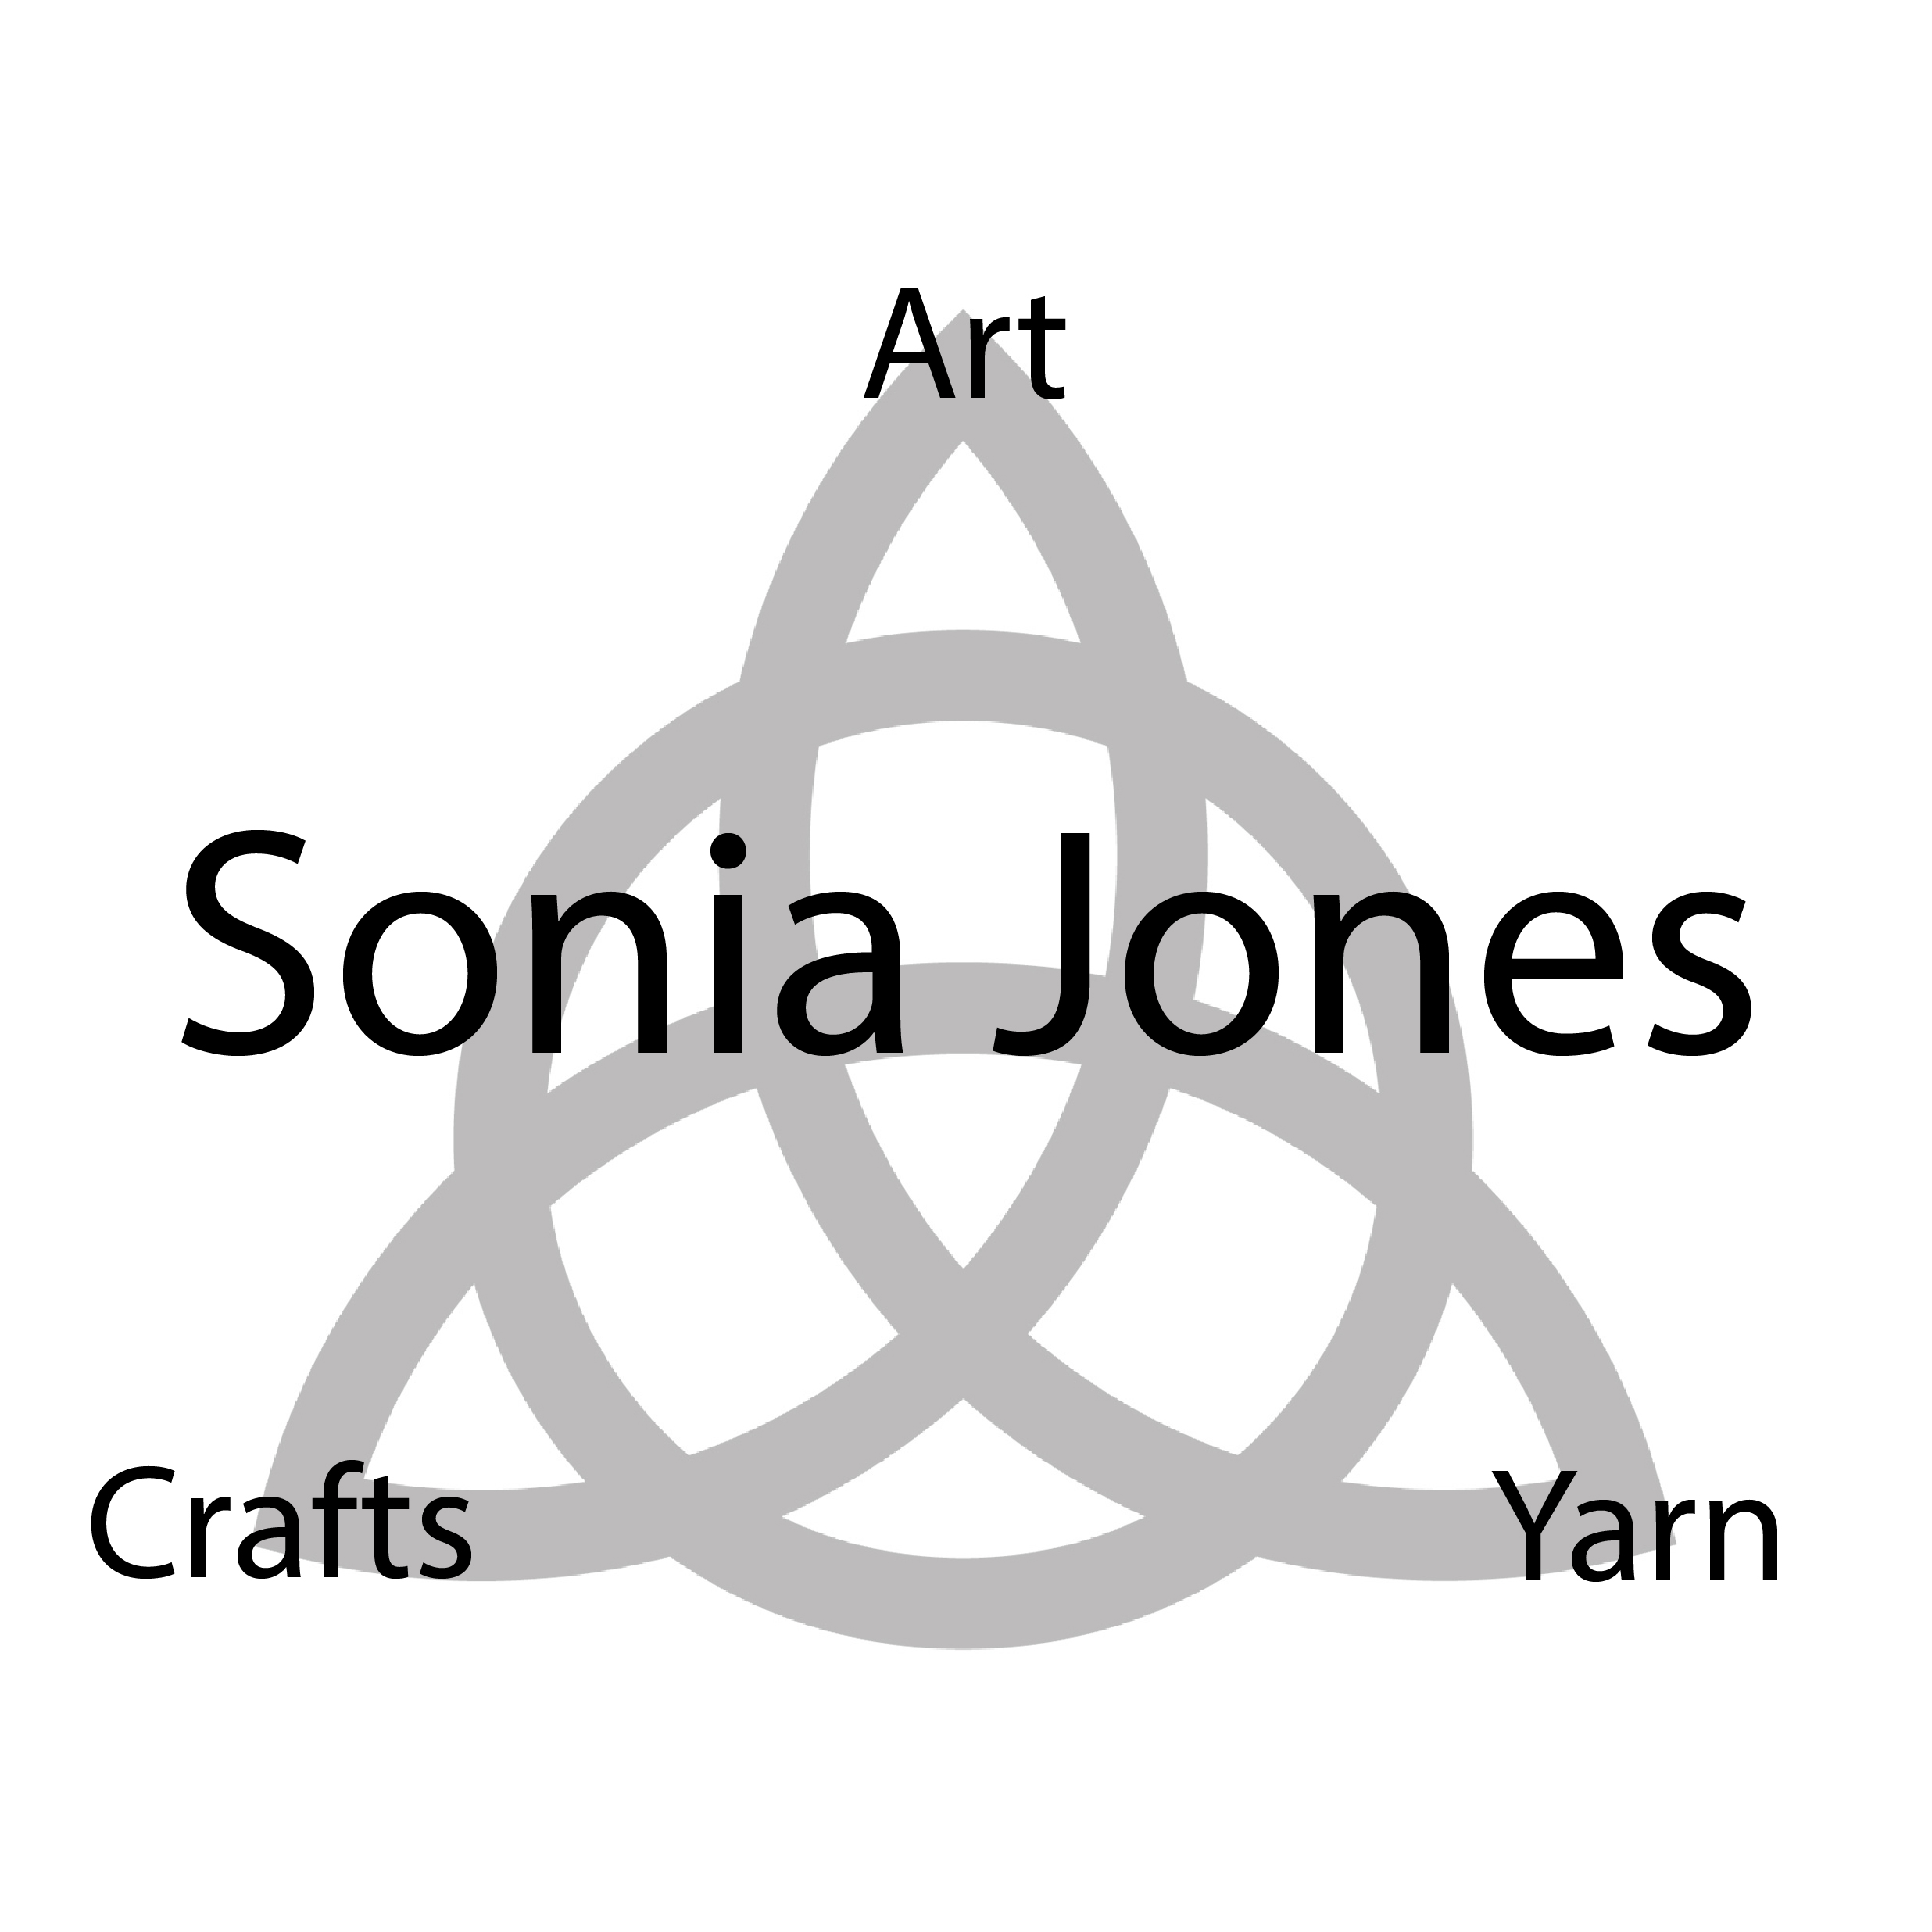 Sonia Jones Crafts